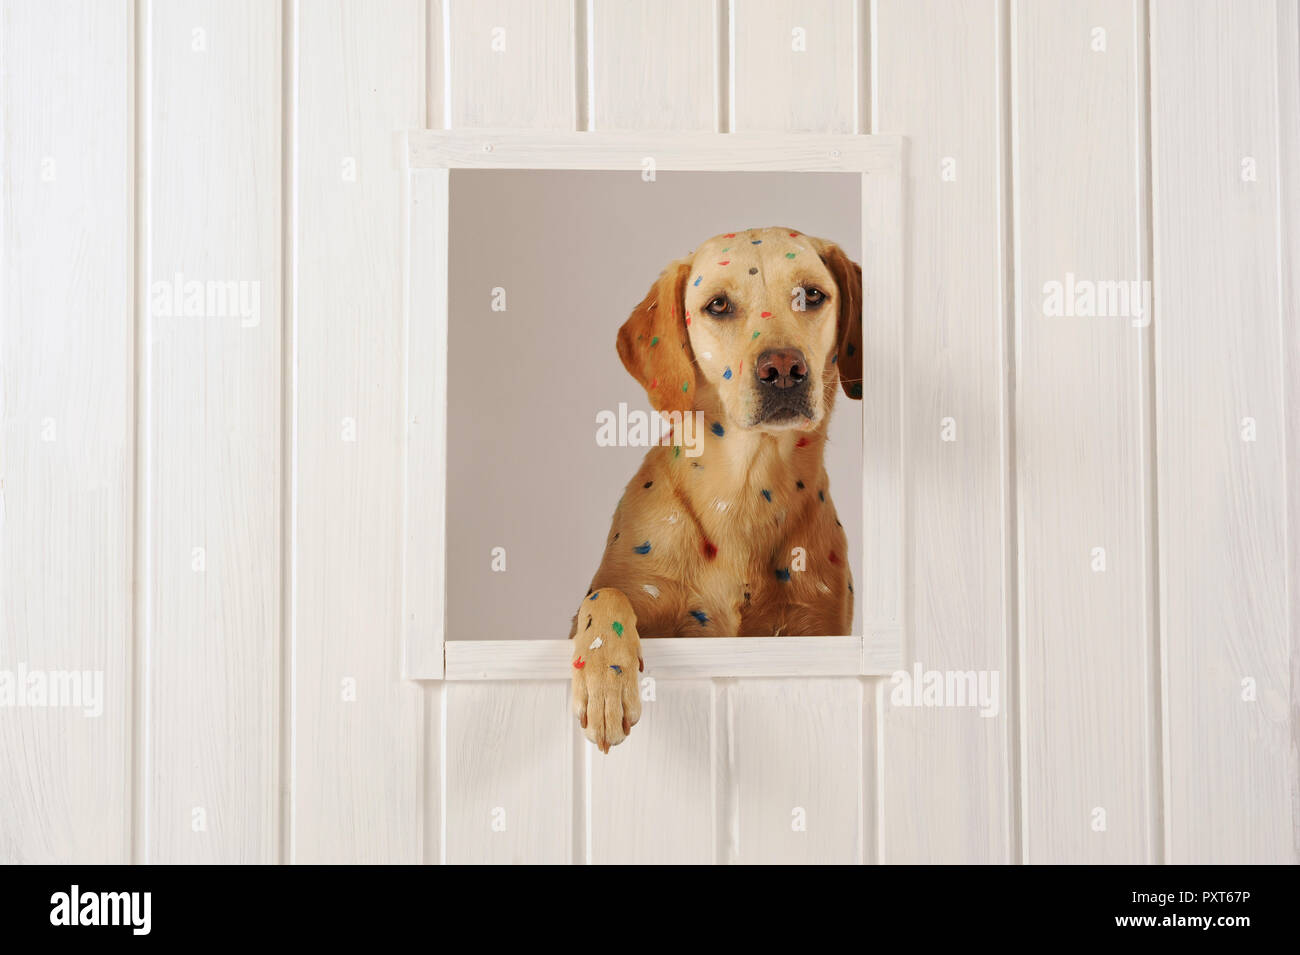 Labrador Retriever, jaune, chienne, a taches de couleur sur sa fourrure, regarde à travers la vitre, Autriche Banque D'Images